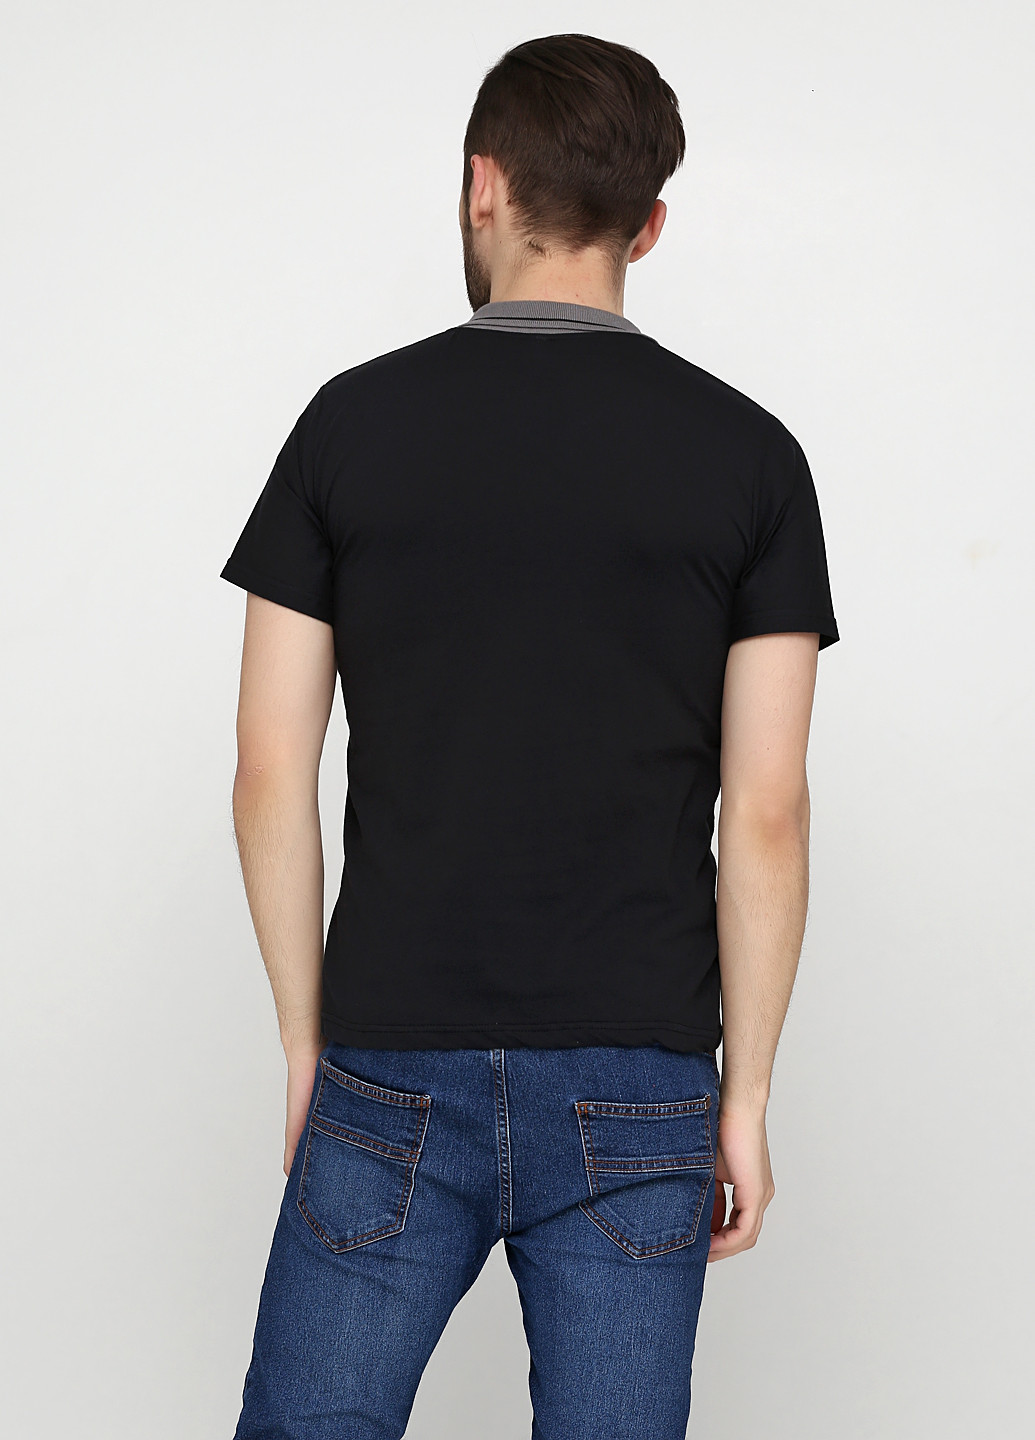 Черная футболка-поло для мужчин Chiarotex однотонная